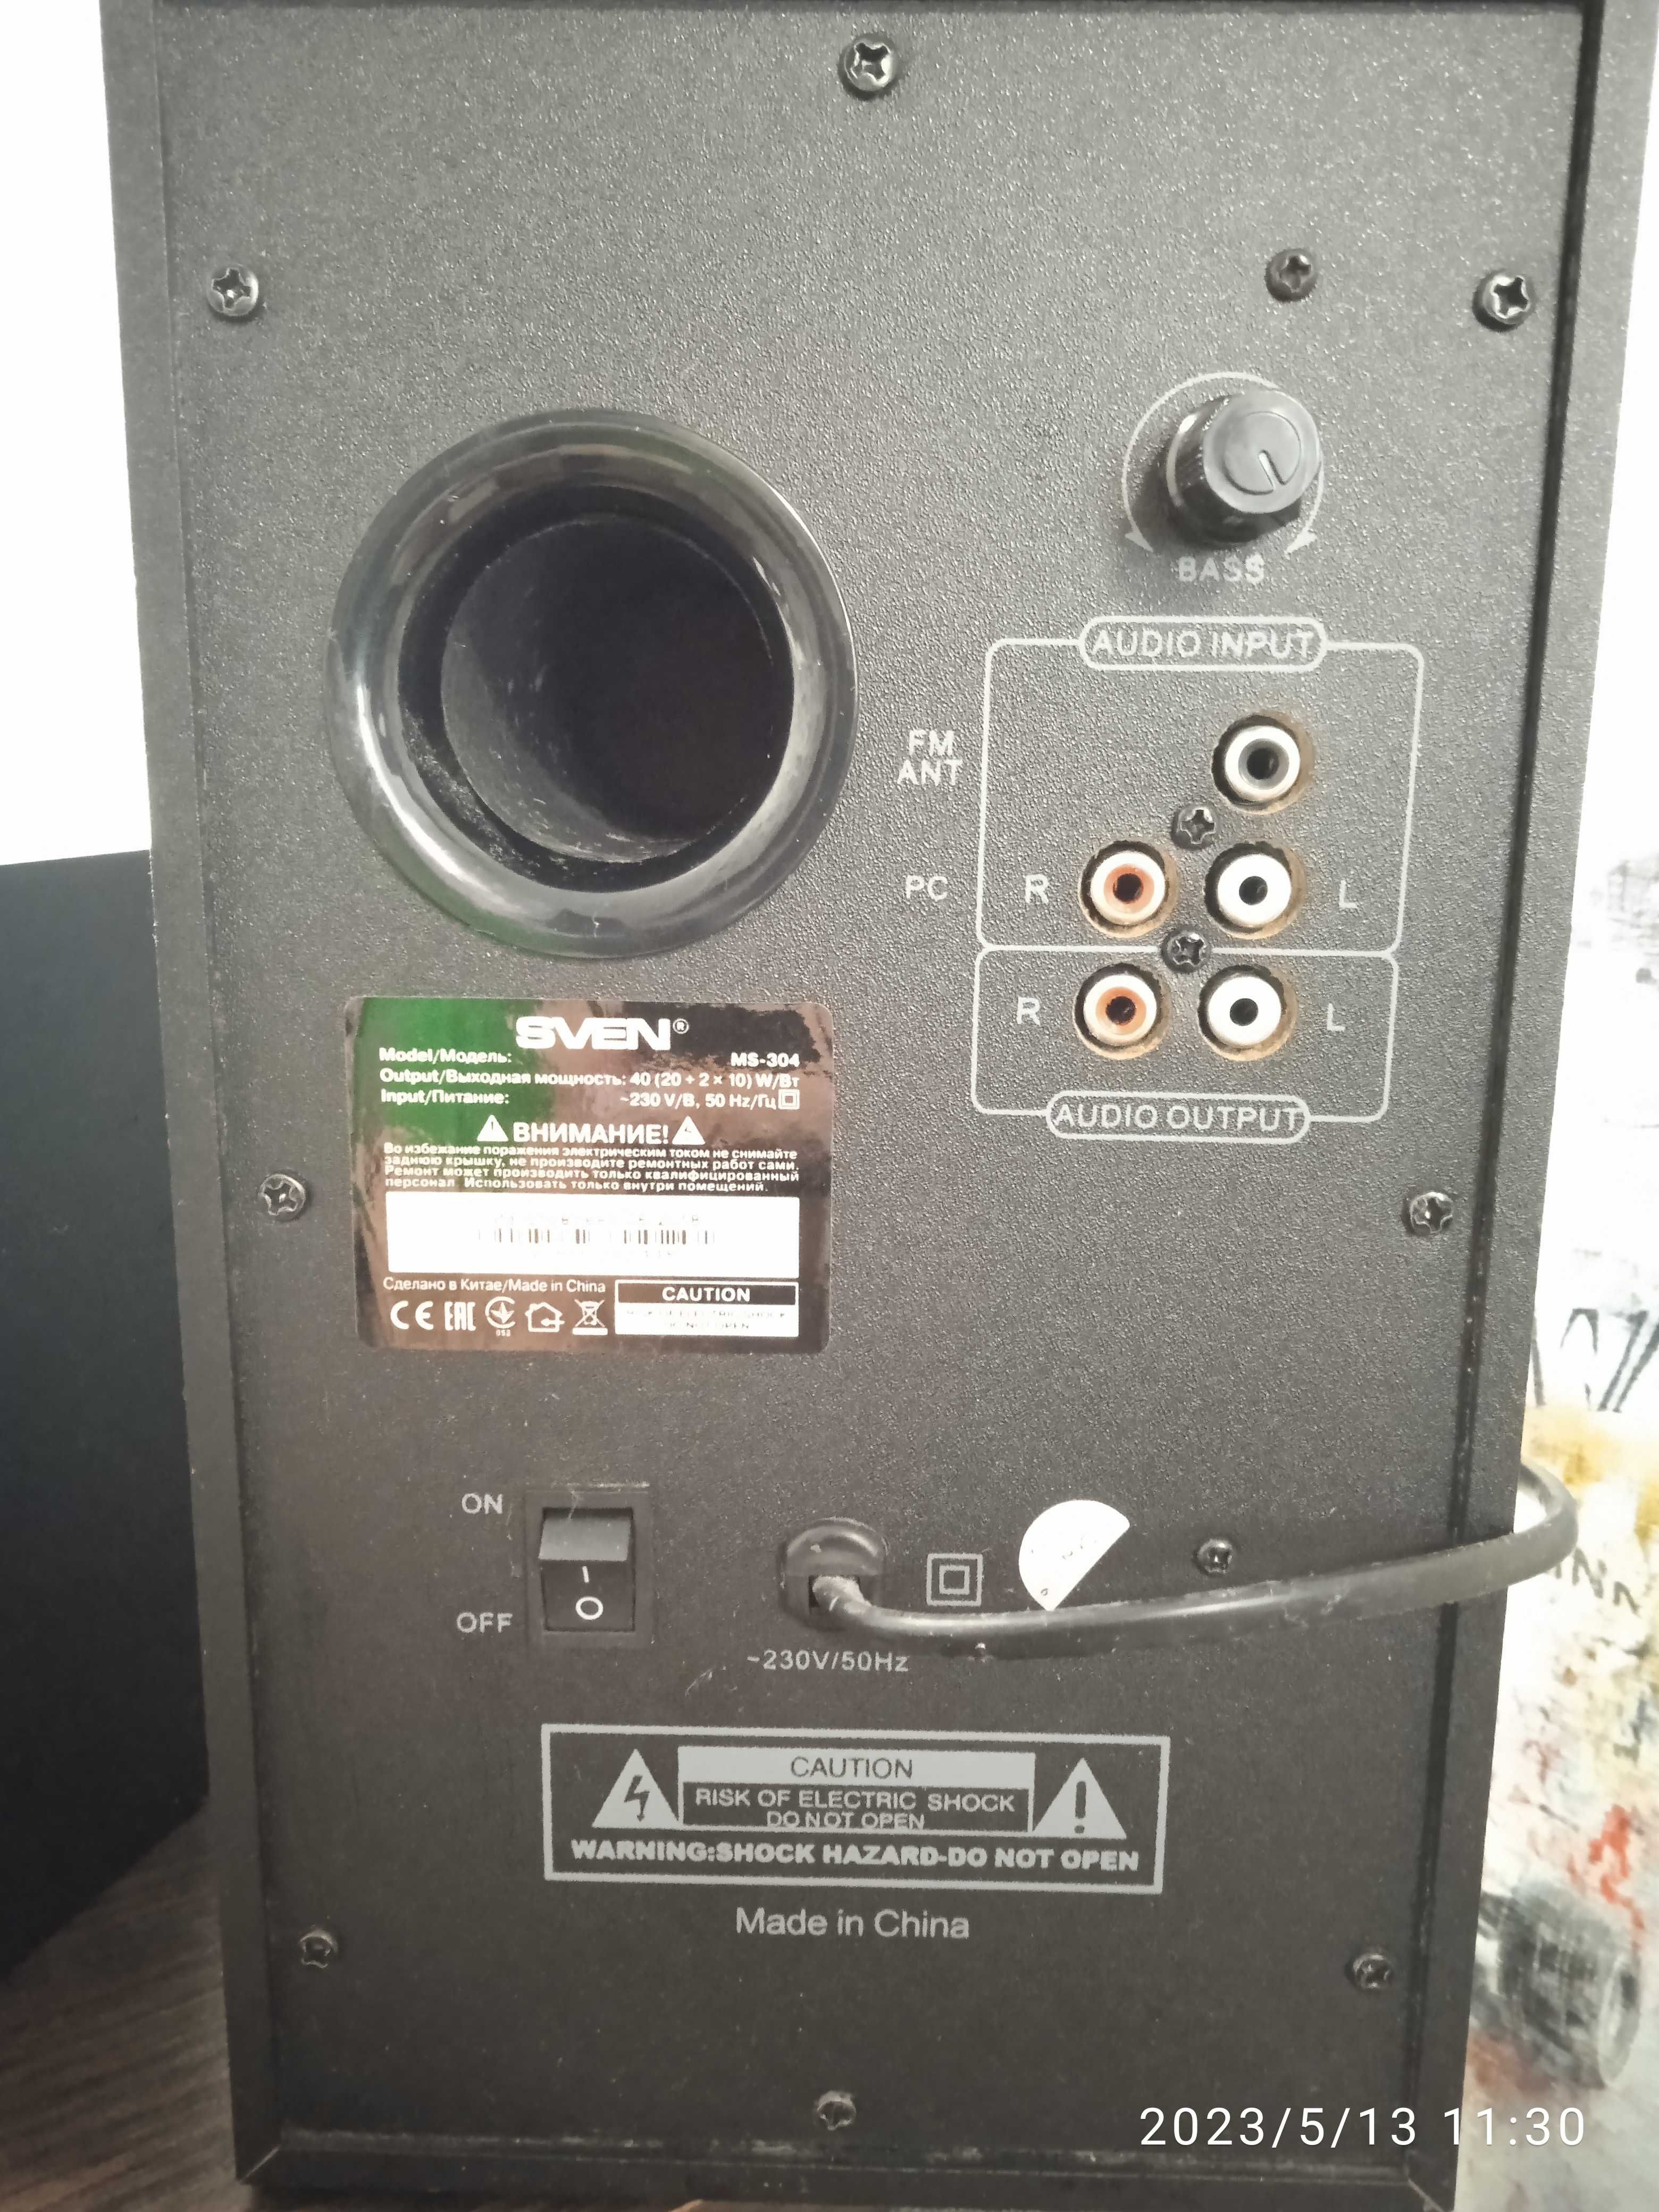 Продам сабвуфер sven MS 304 в хорошем состоянии  домашняя аудиосистема